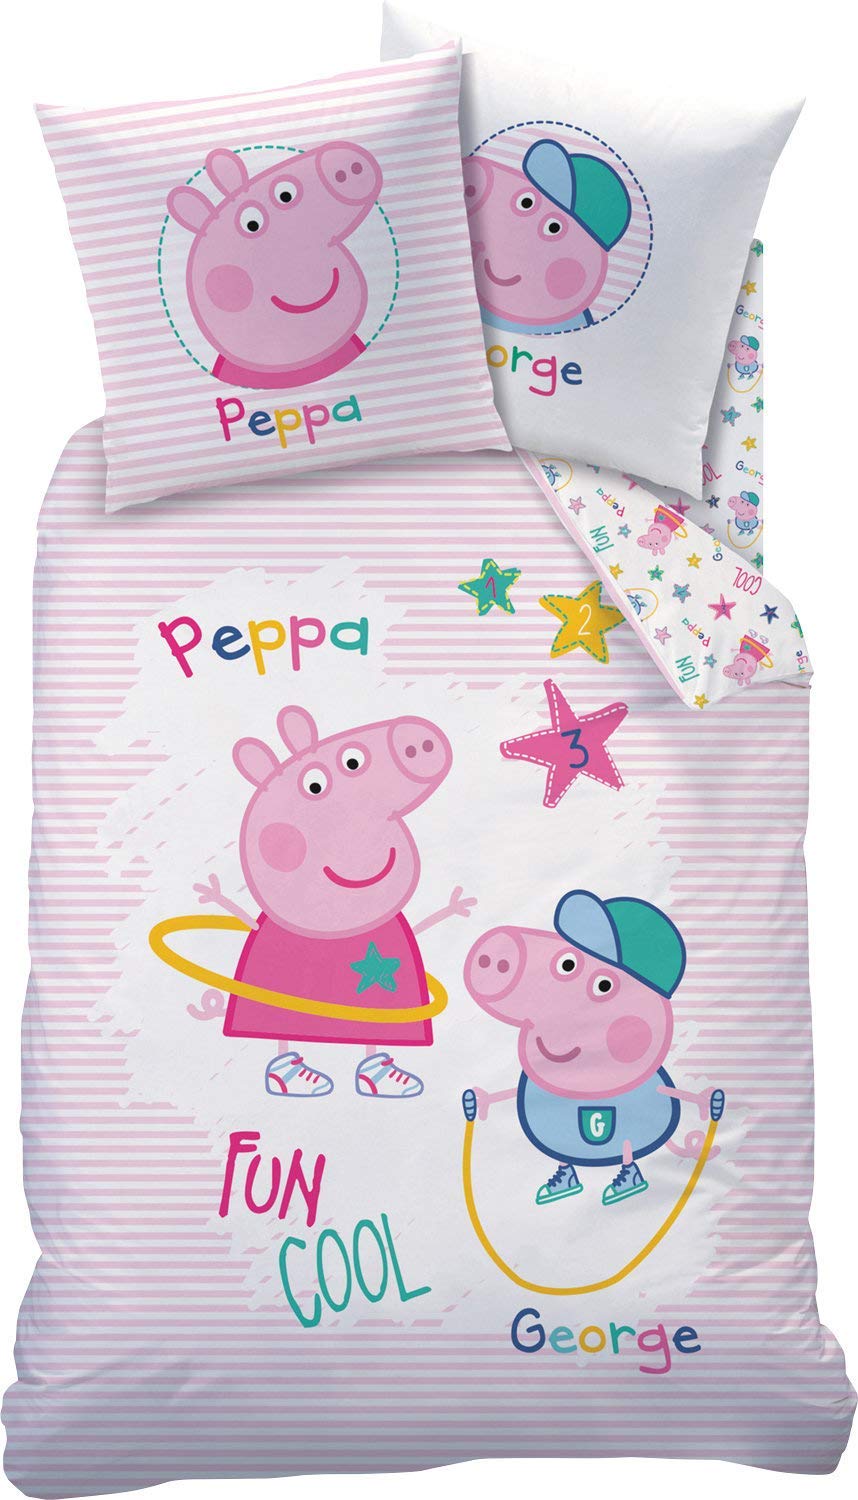 Indexbild 5 - Peppa Wutz Kinderbettwäsche Peppa Pig 135X200 Baumwolle Mädchen Bettwäsche Set